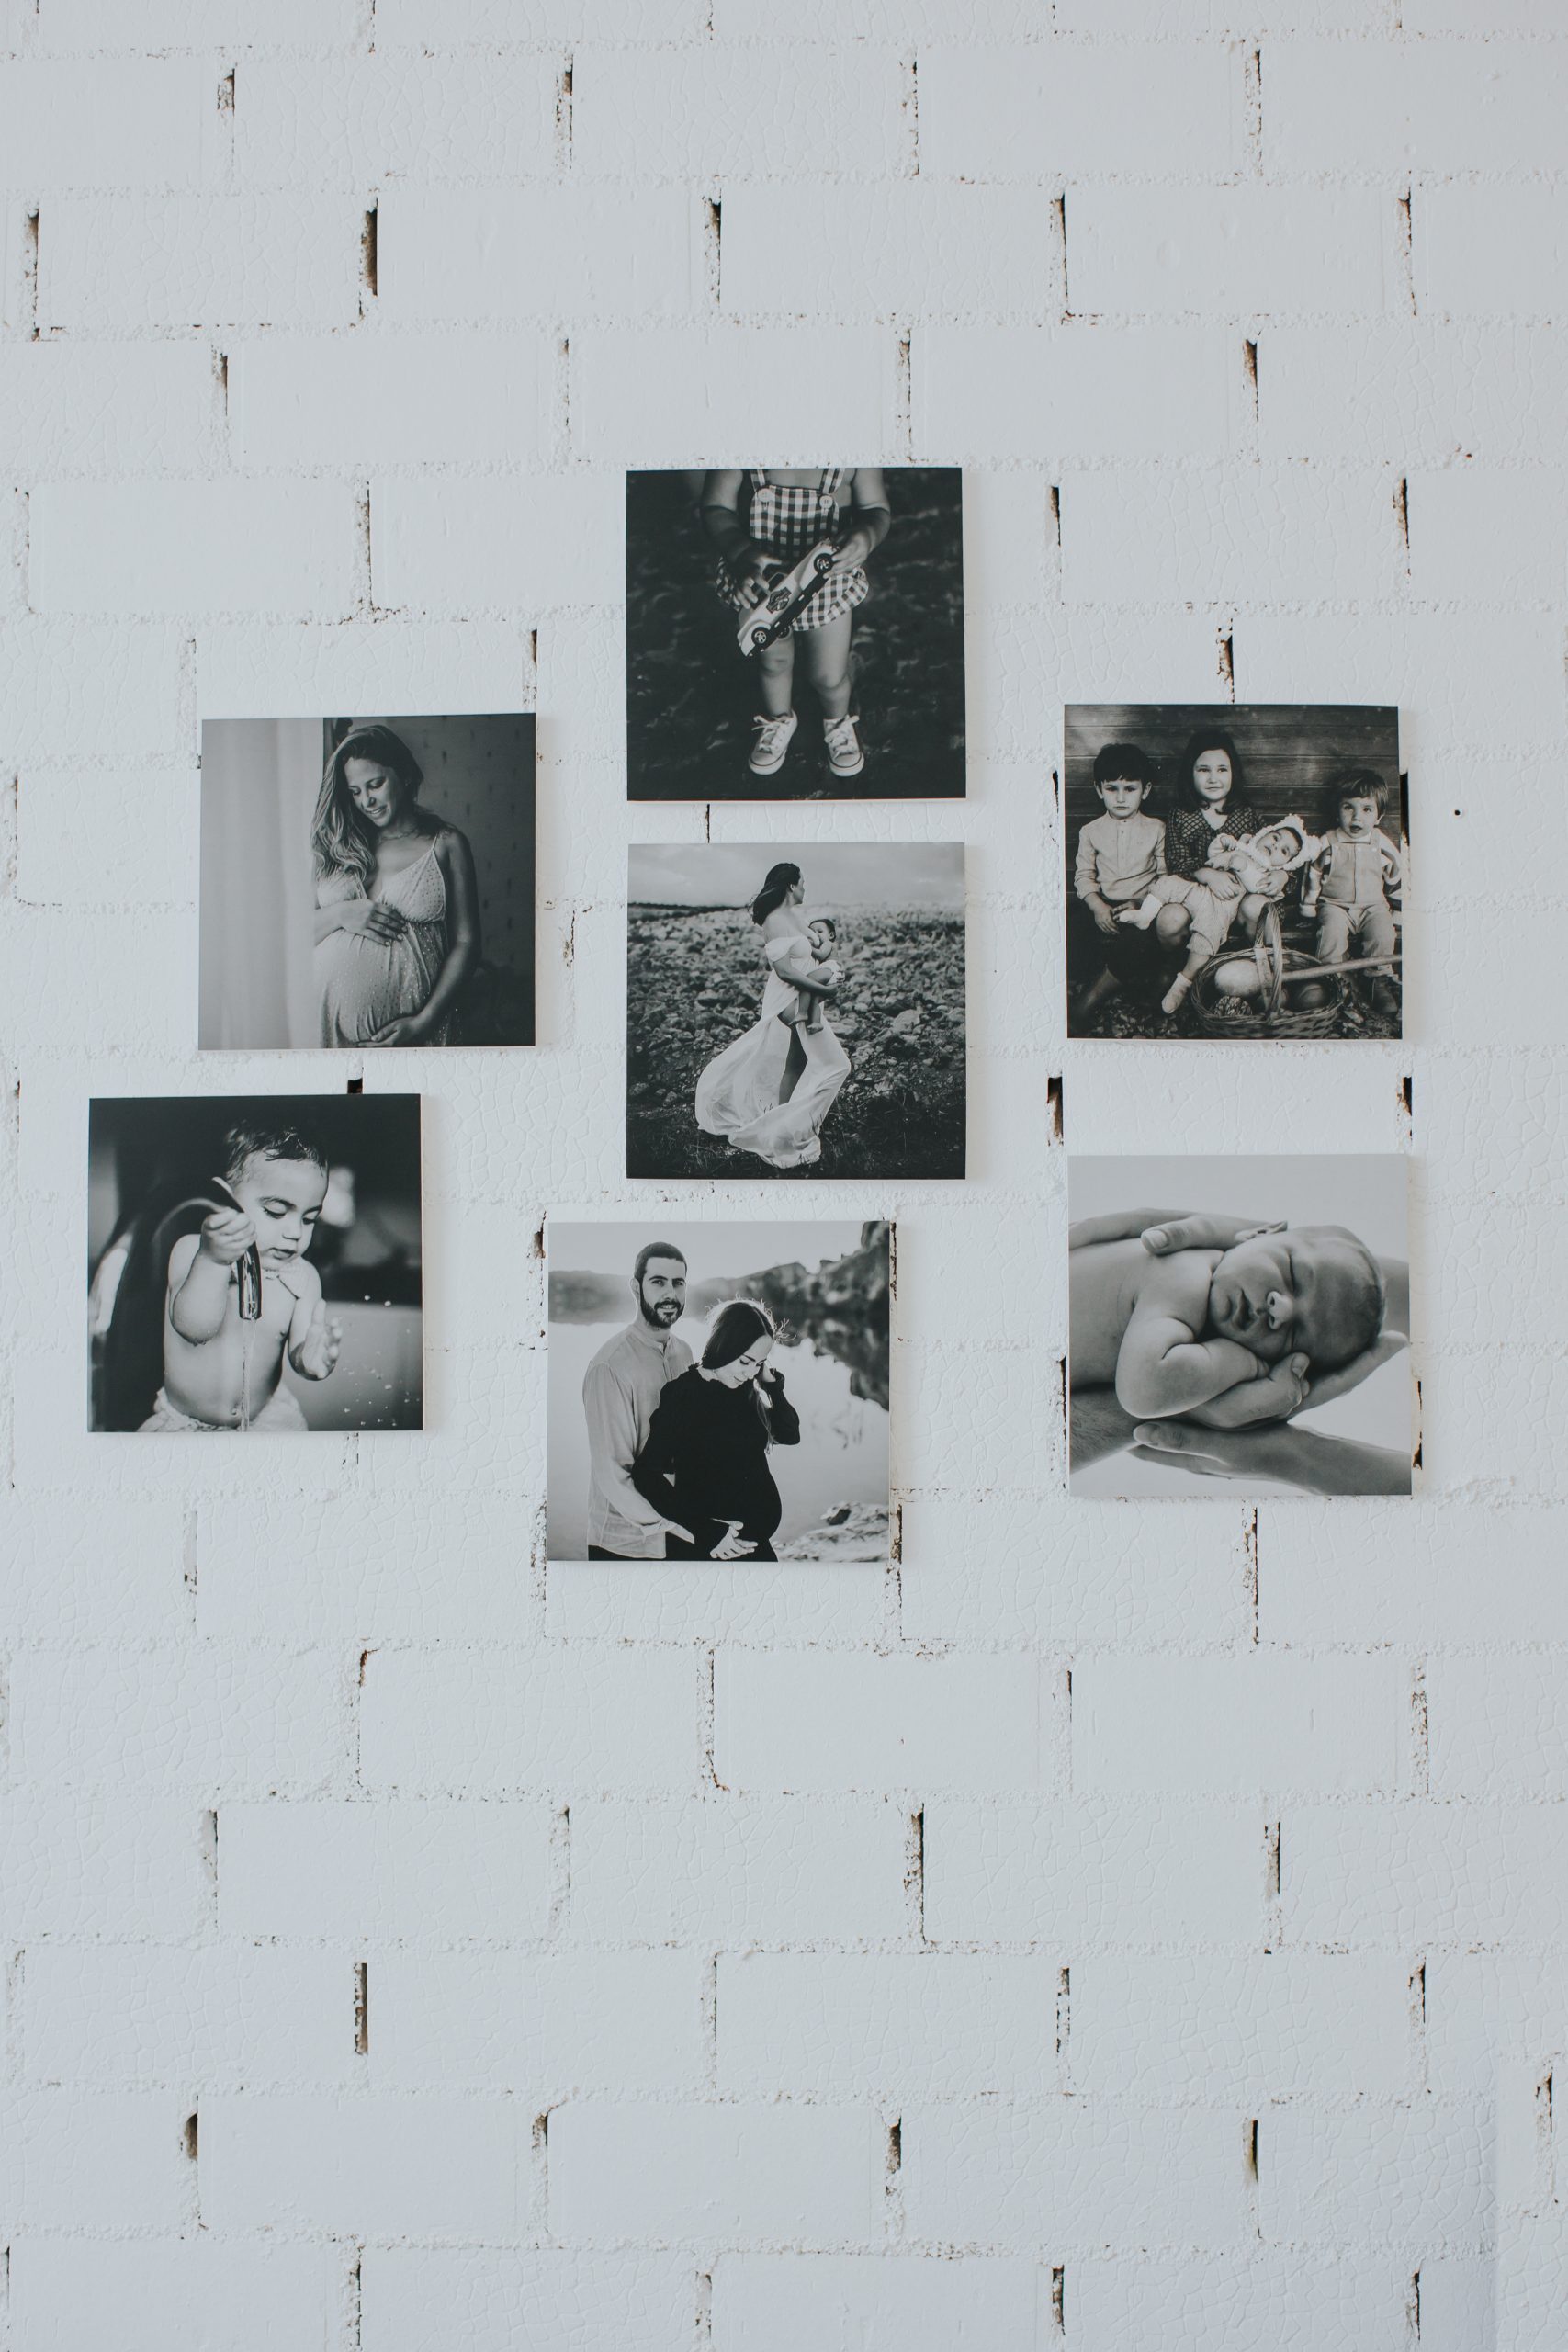 Fotografía de varias personas impresas en forma rectangular pegadas a la pared